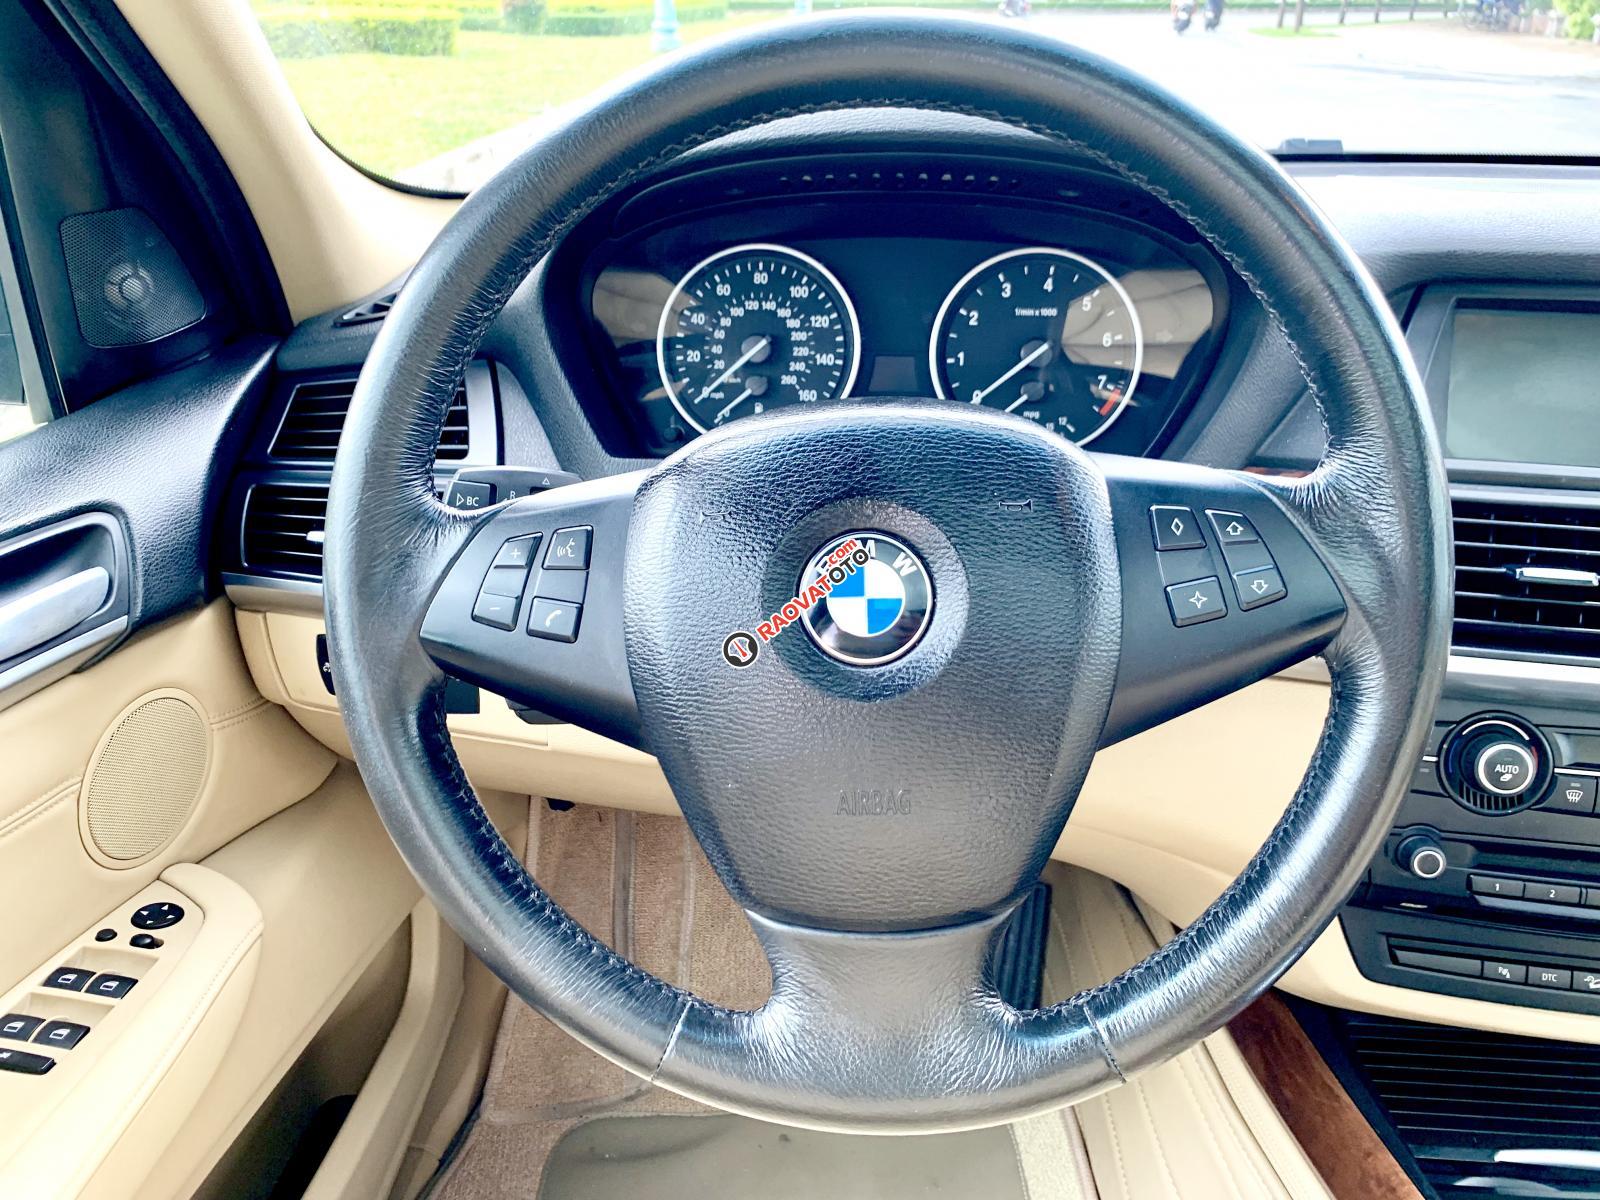 BMW X5 3.0 nhập Mỹ 2009 8 chỗ, hàng full cao cấp vào đủ đồ hai cửa sổ trời hai-3